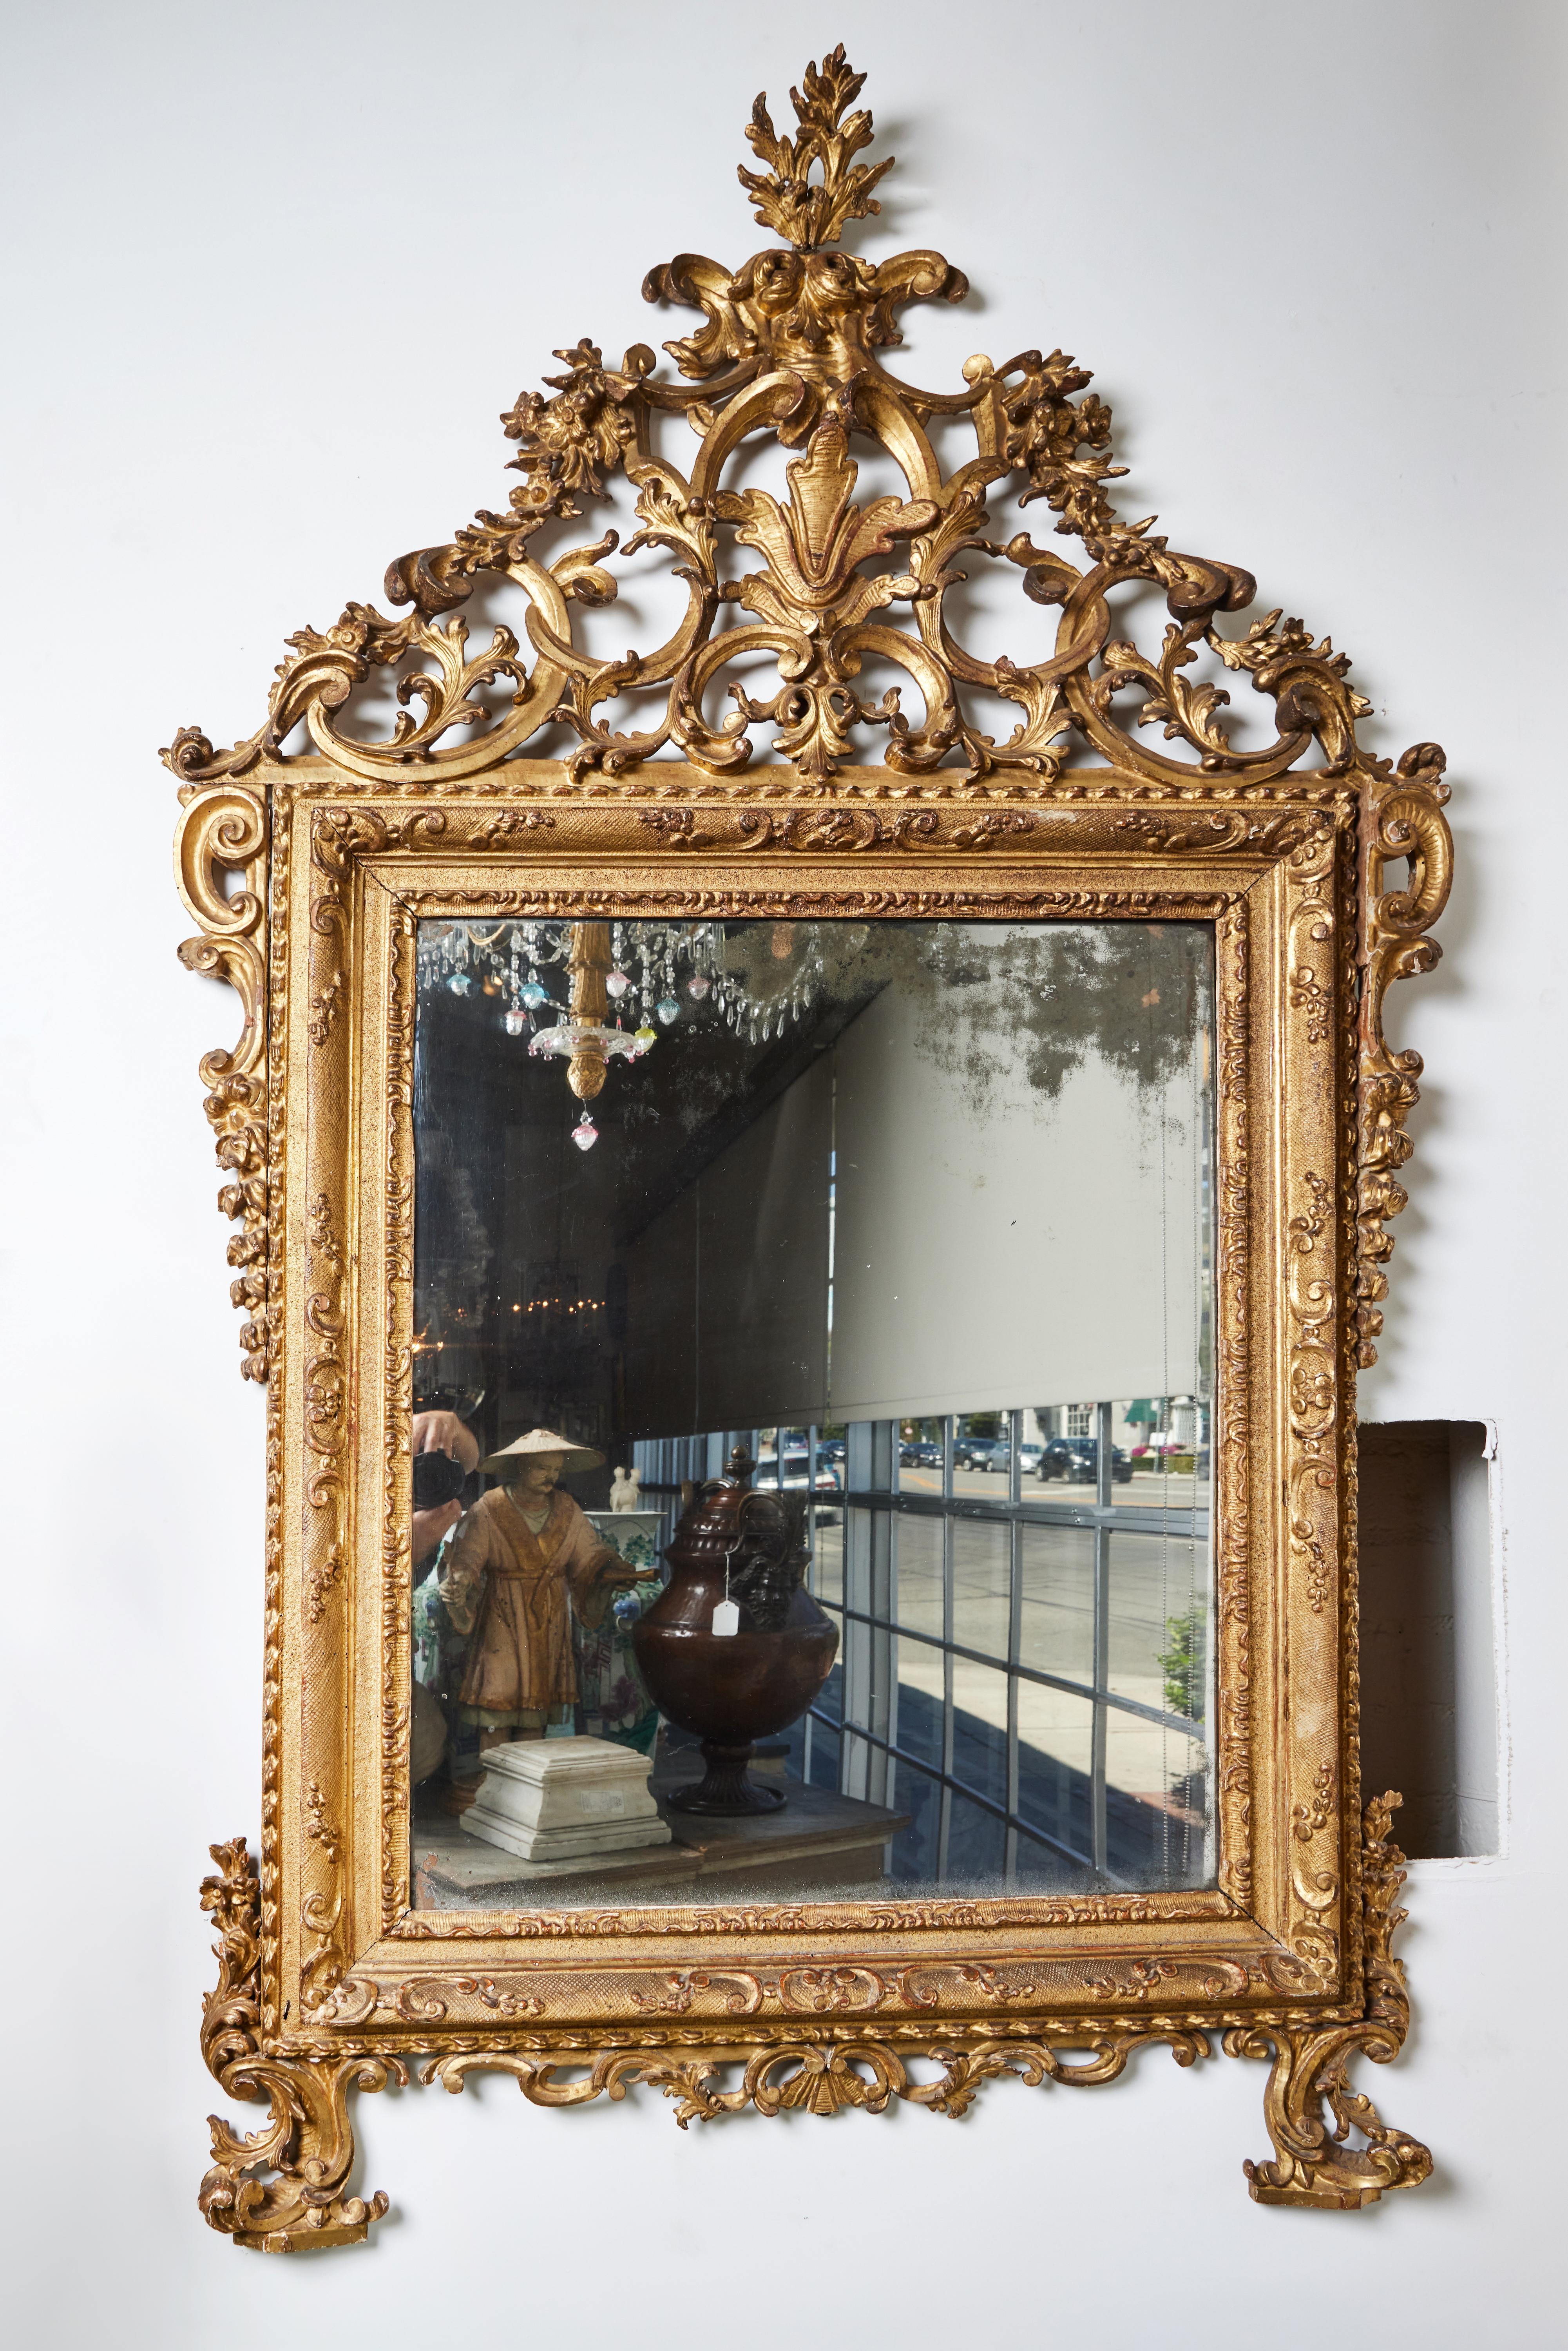 Un incroyable cadre vénitien, sculpté et doré à la main, avec un verre miroir d'origine qui a subi des pertes dues à l'âge. Couronne percée et feuillagée.